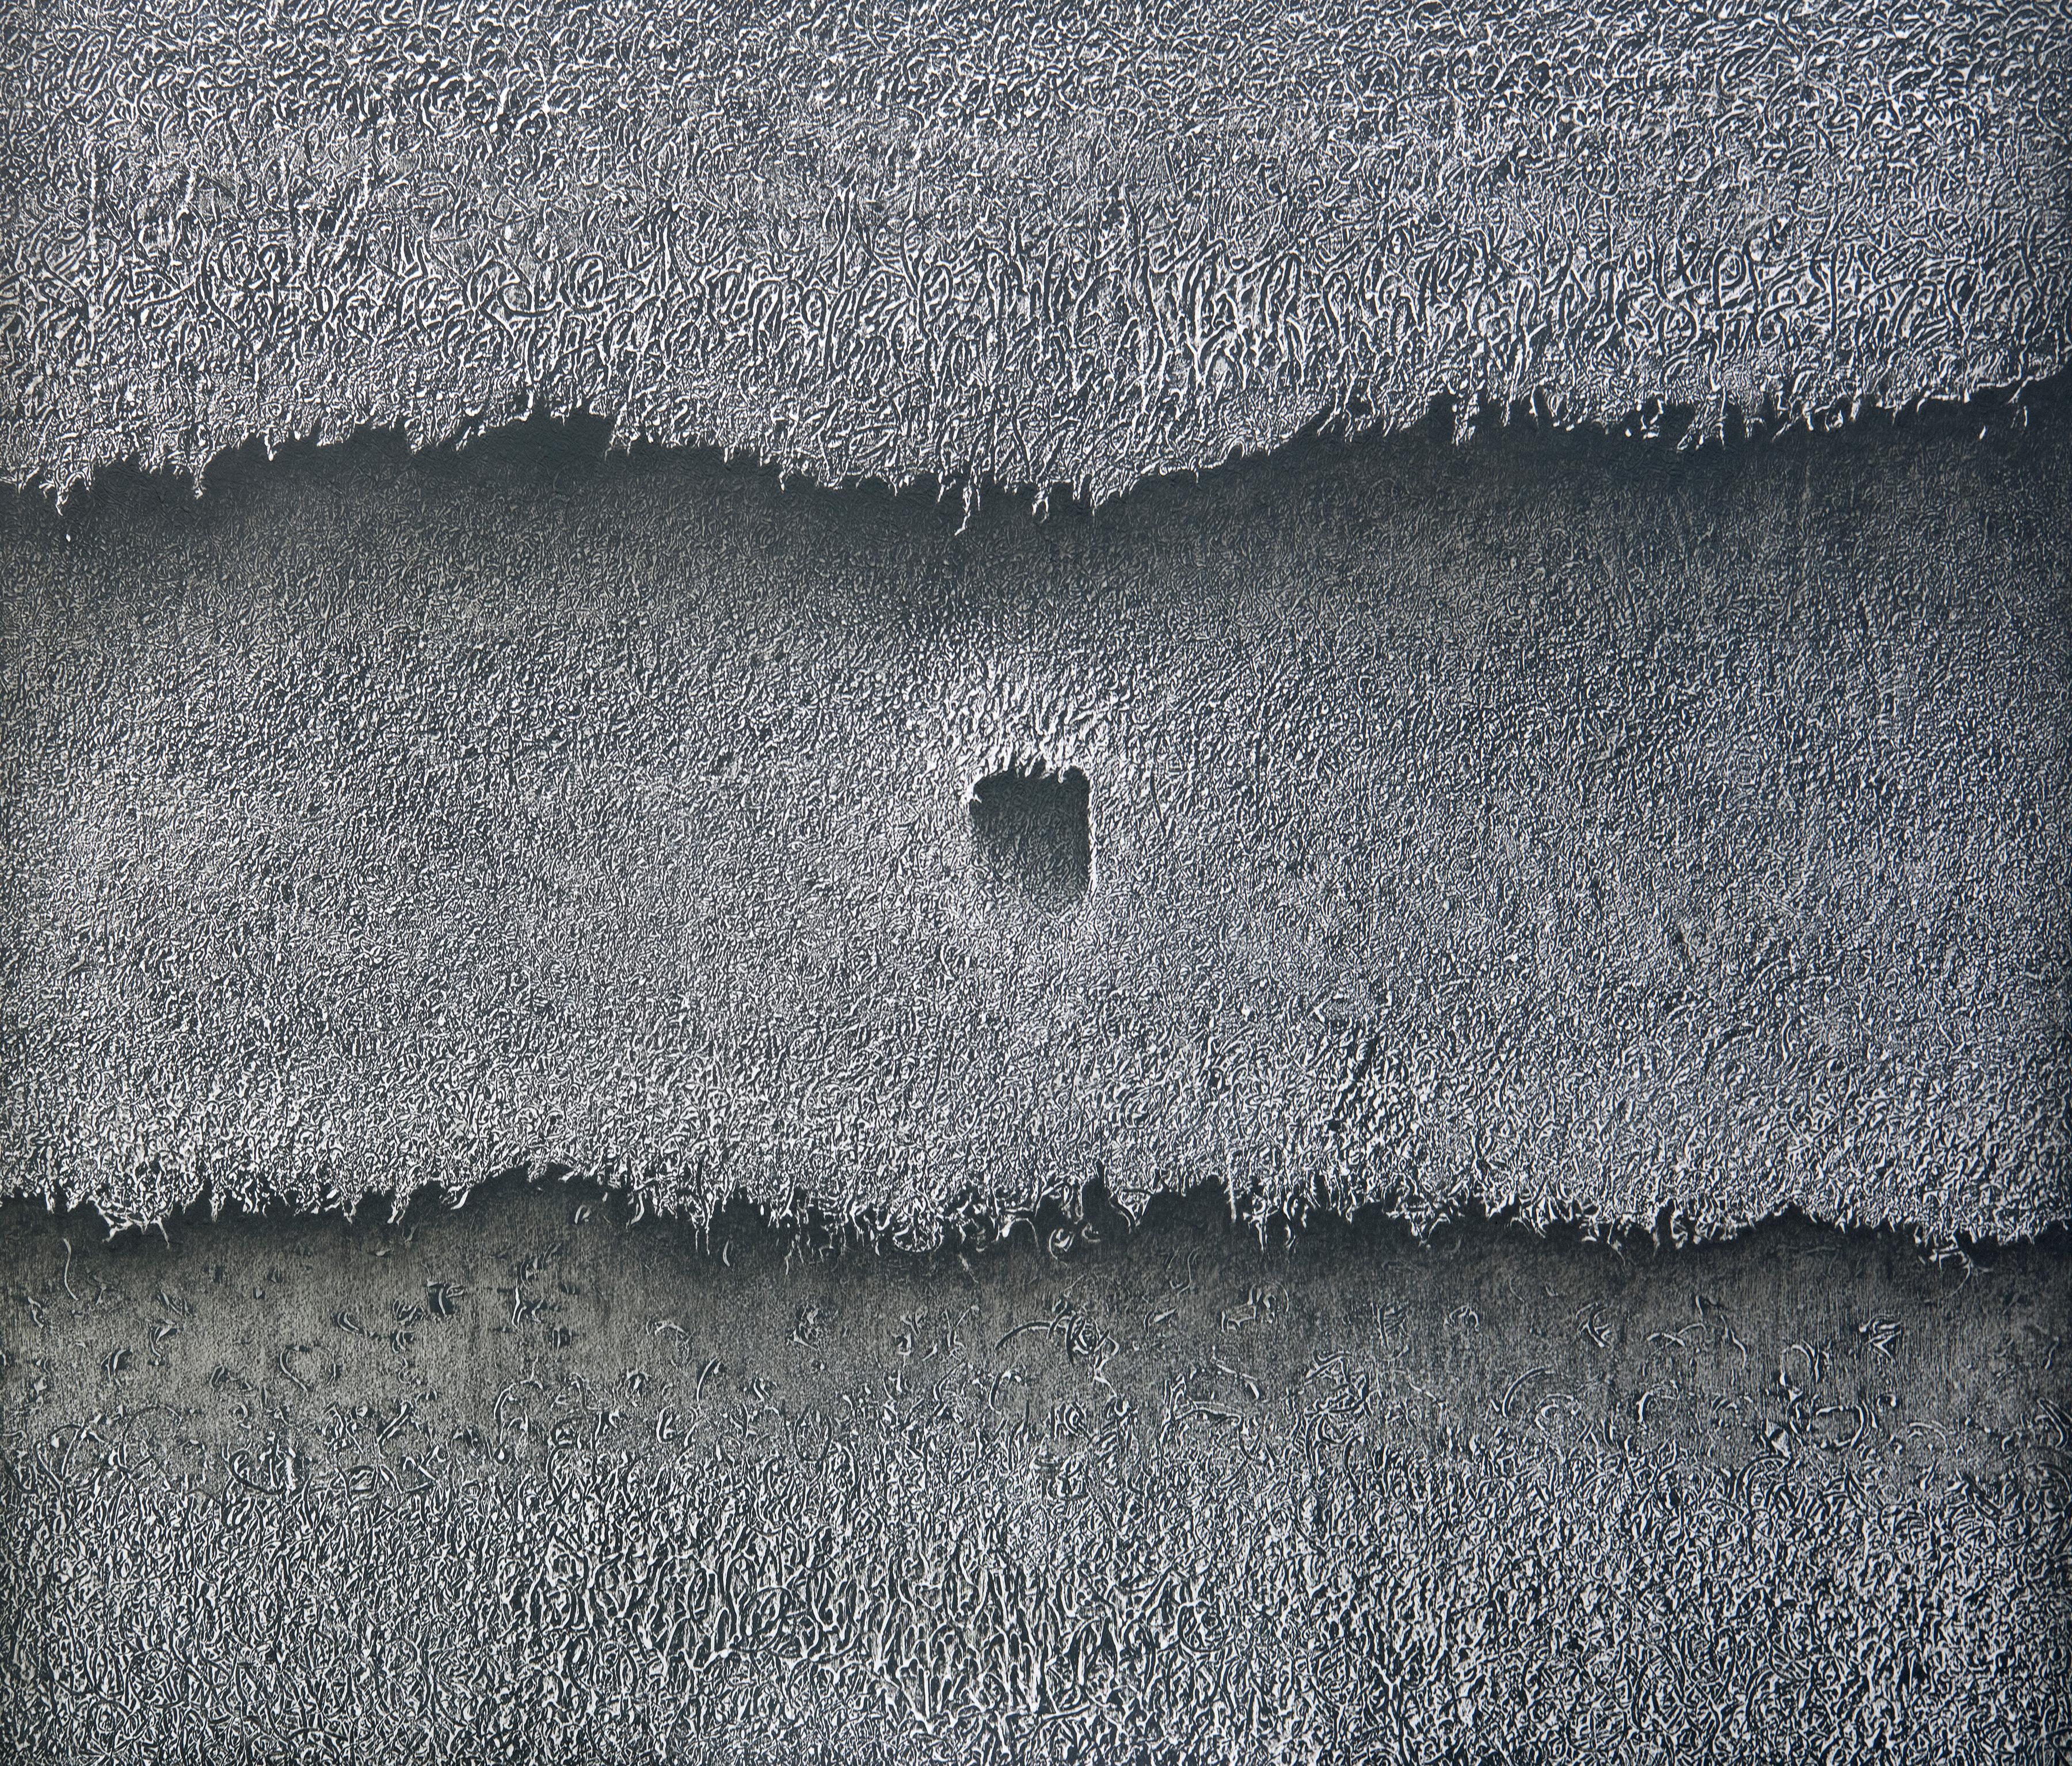 Abstract Painting Bill Maggio - Grande dimension de texture géométrique contemporaine noire et blanche